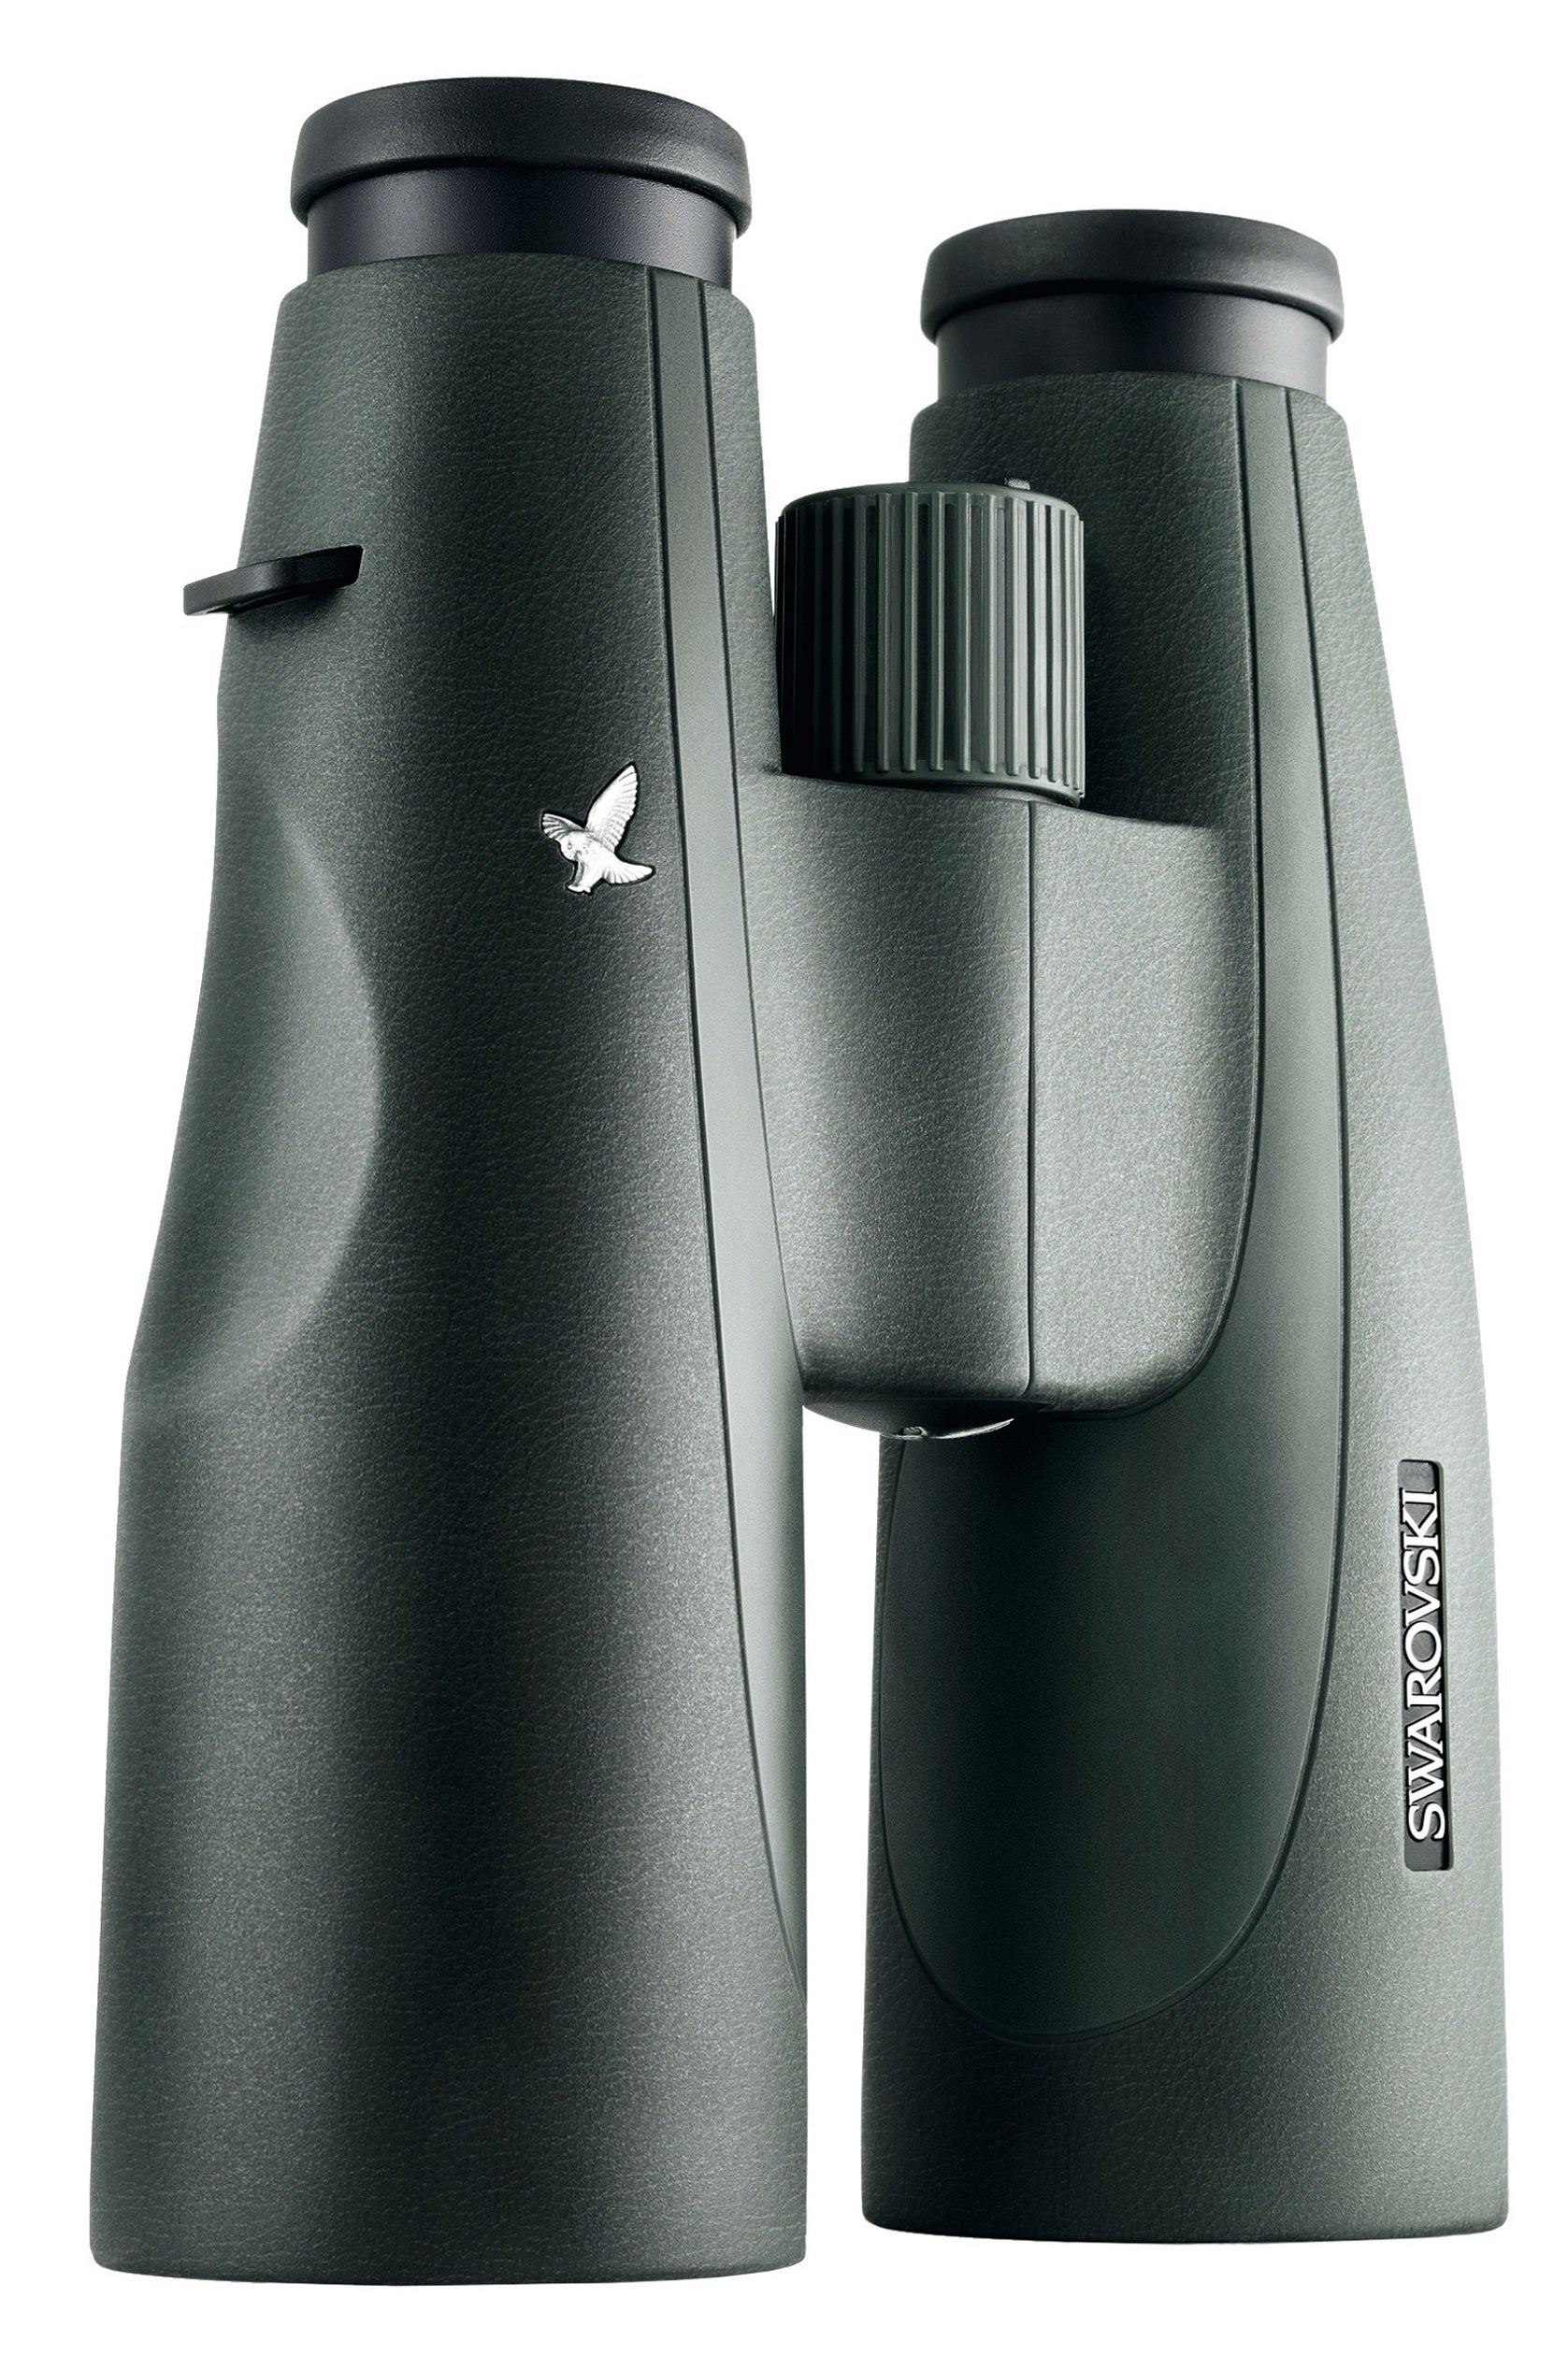 SLC 8x56 Premium Binoculars - Product Photo 6 - Stand up view of the binoculars